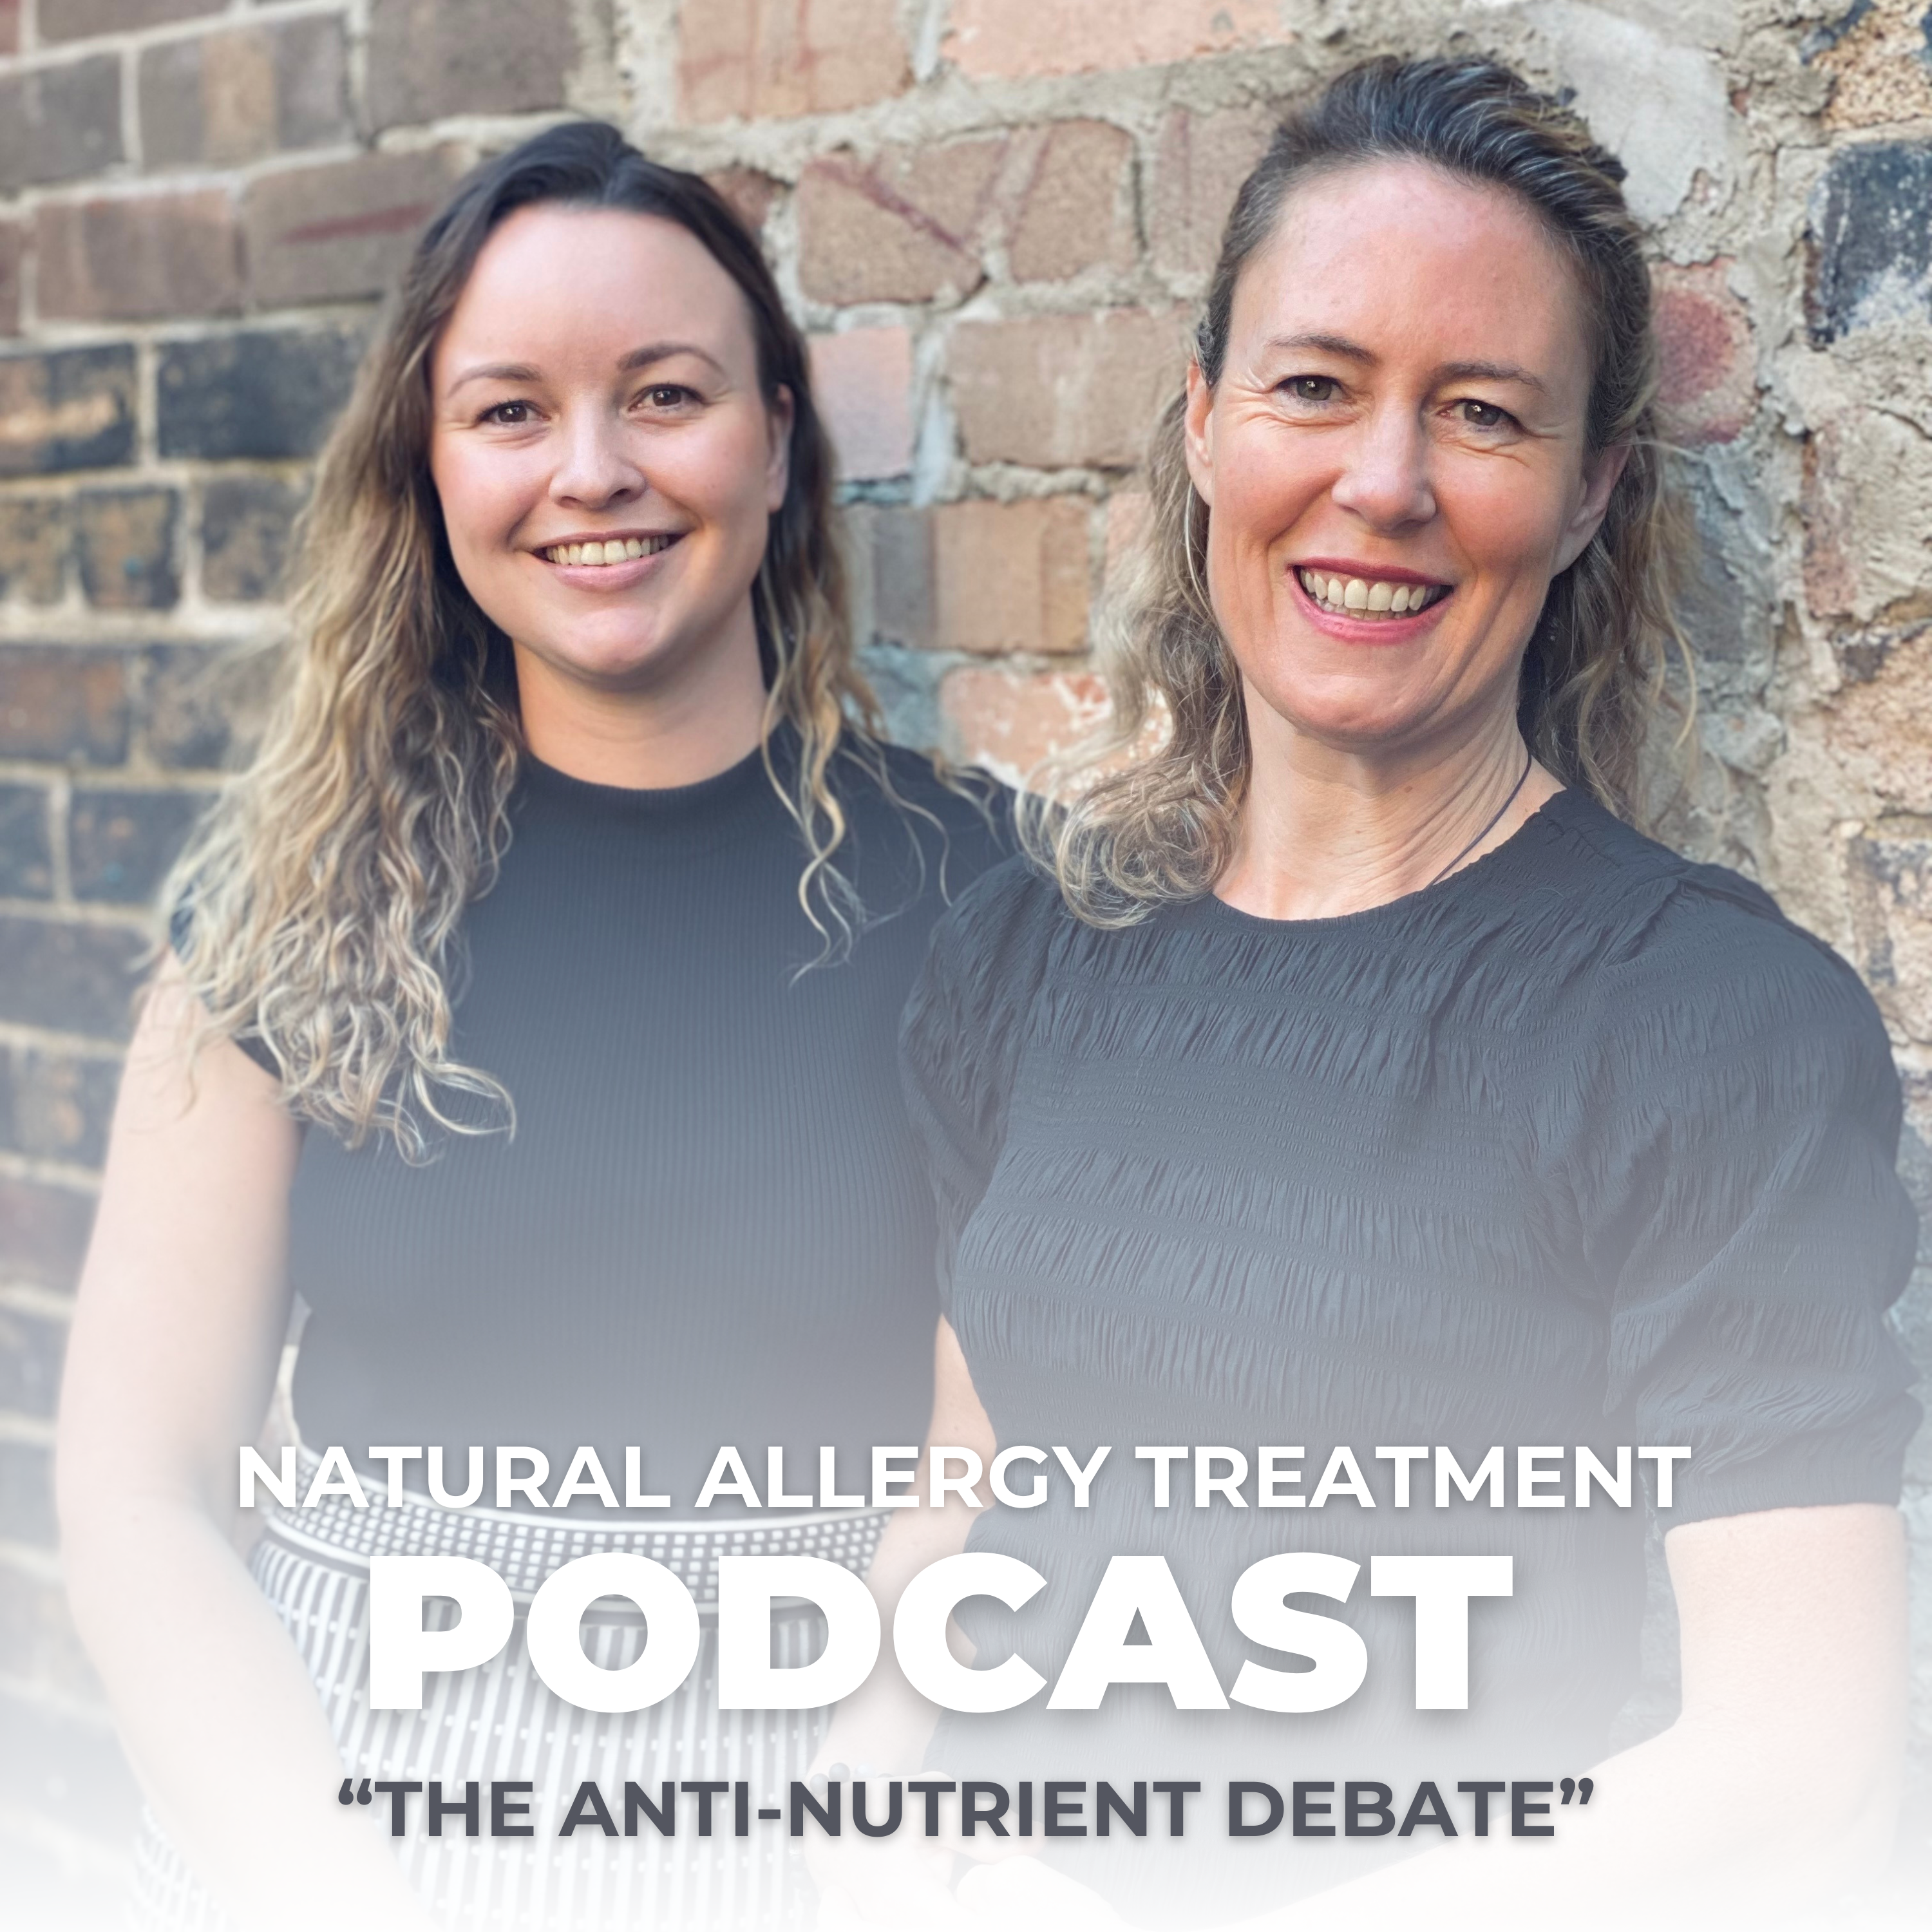 The Anti-Nutrient Debate